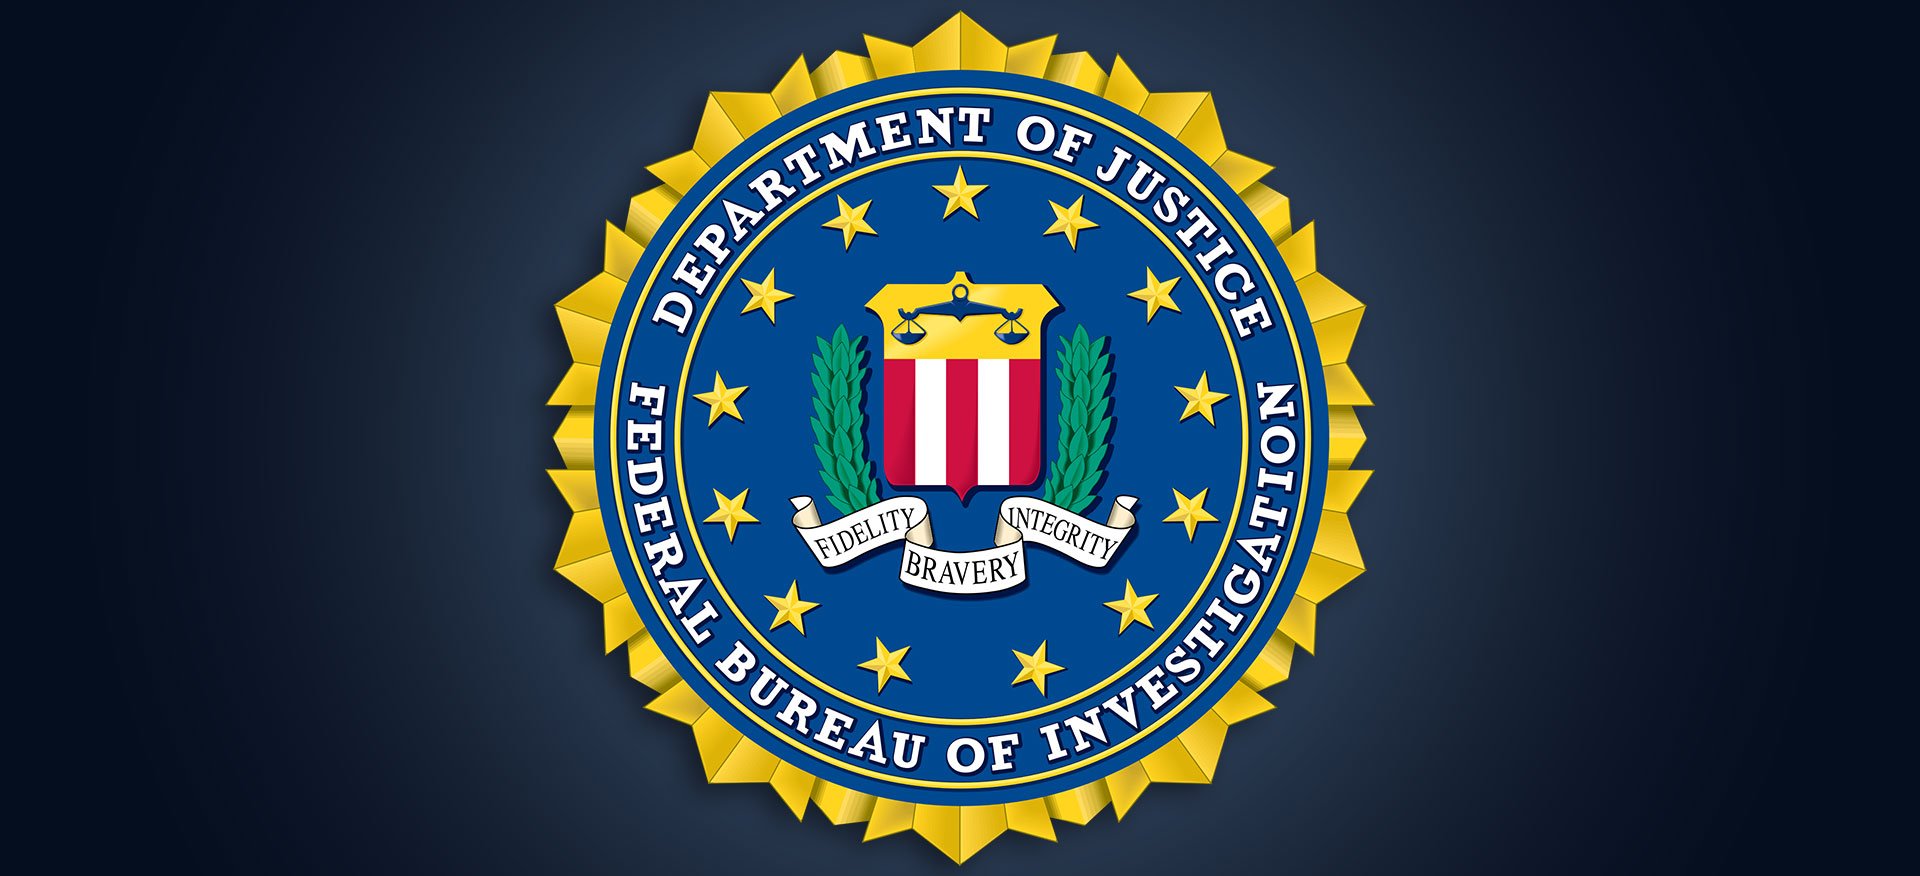 ΗΠΑ: Το FBI αναφέρει ότι ένας ένοπλος επιχείρησε να παραβιάσει τις εγκαταστάσεις του στο Σινσινάτι